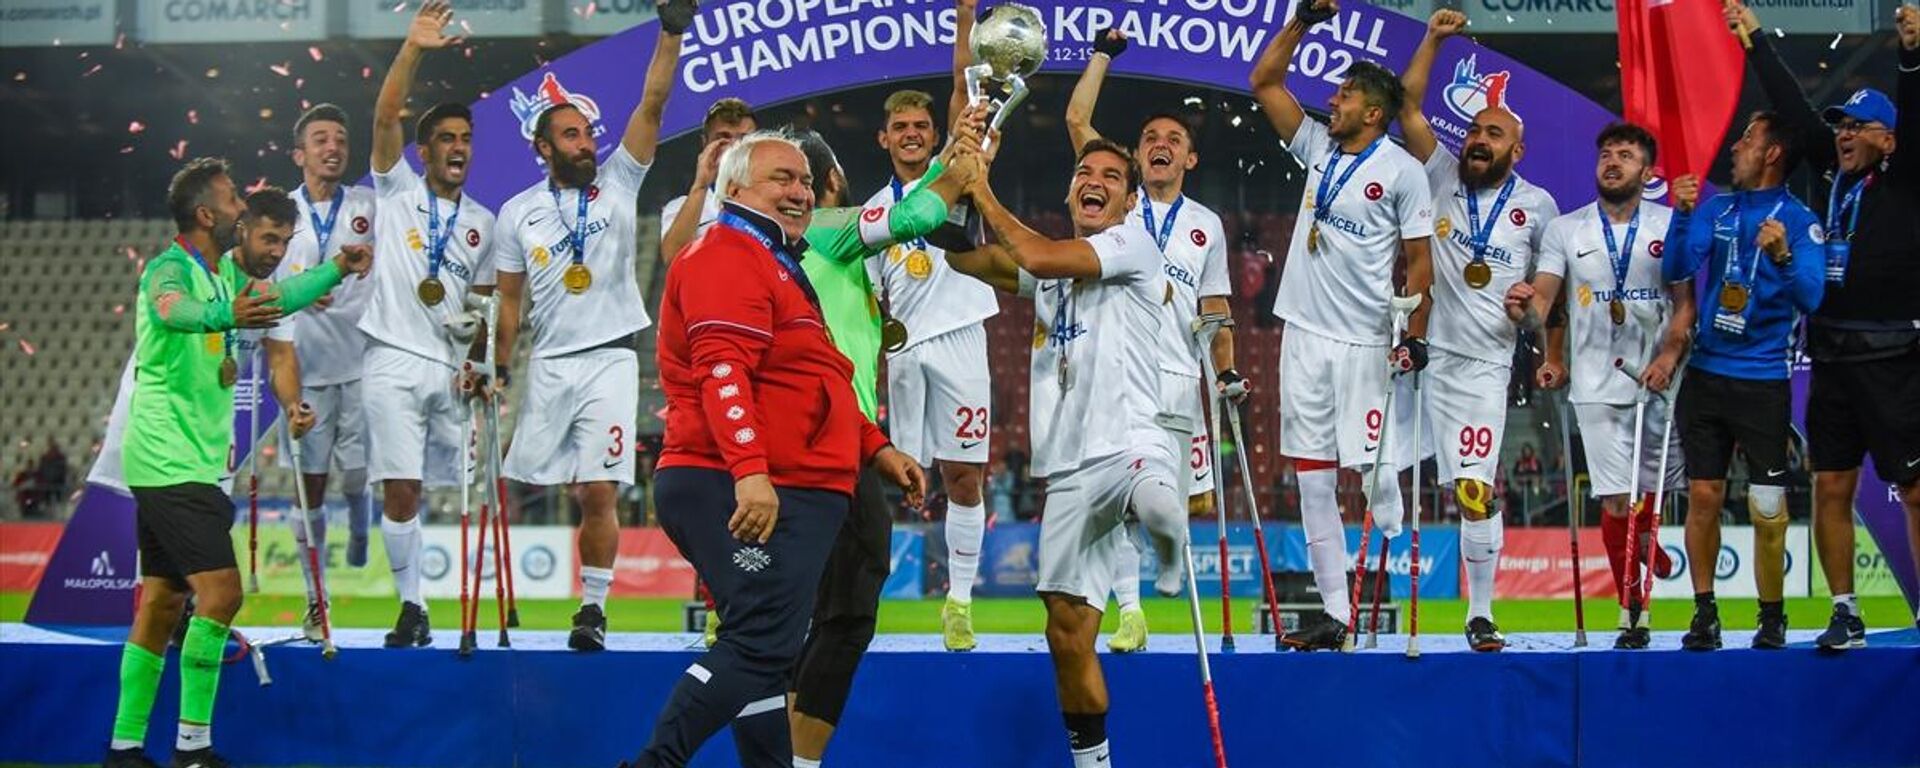 Avrupa şampiyonu Ampute Futbol Milli Takımı, kupasını aldı  - Sputnik Türkiye, 1920, 19.09.2021